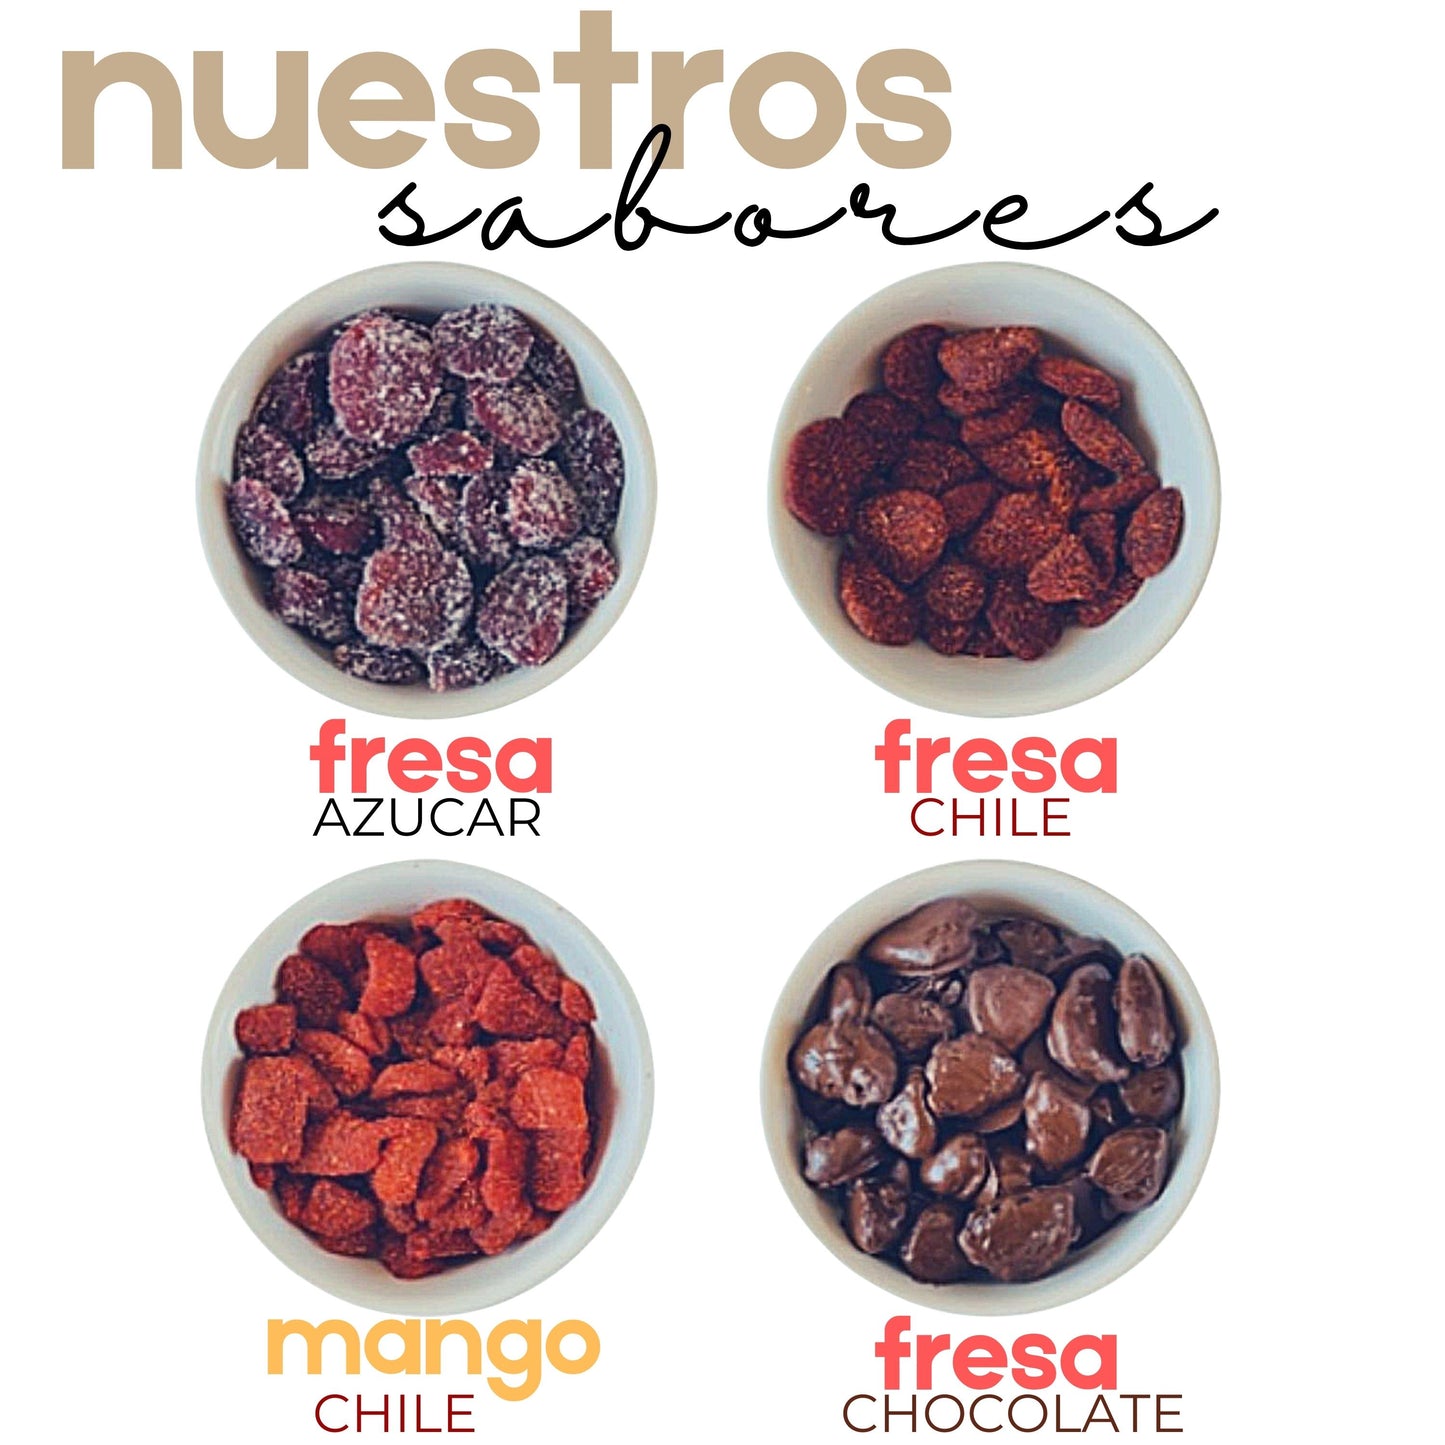 Fresas Con Chile | Fresas Cristalizadas | Caja Mayoreo | Mexpofood